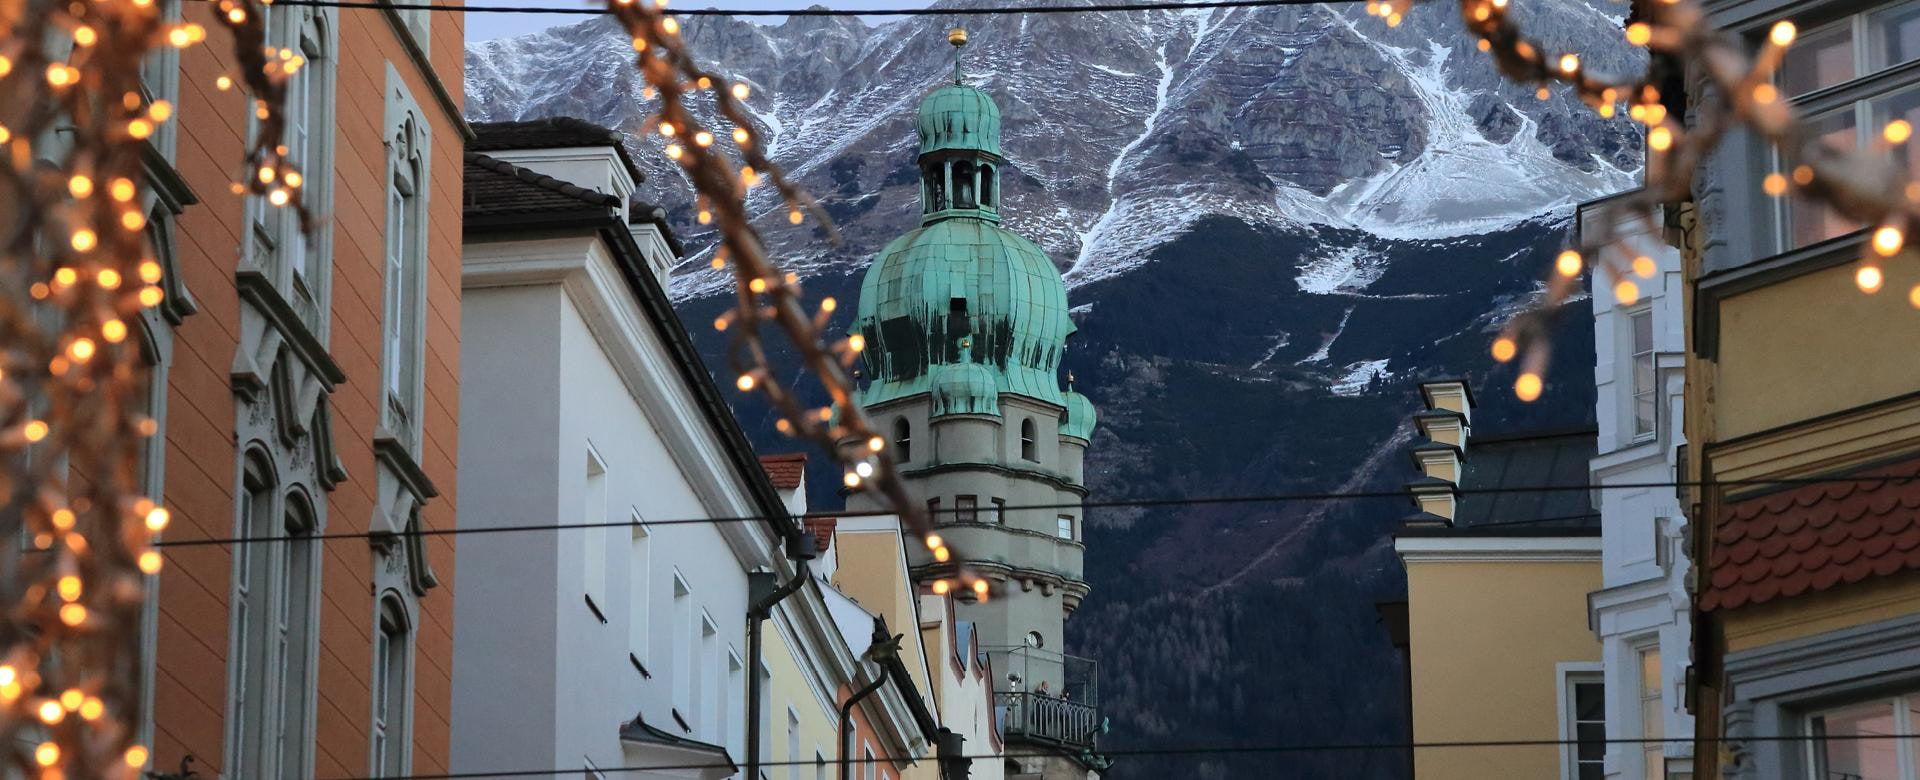 Winterlicher Ausblick in Innsbruck, Tirol